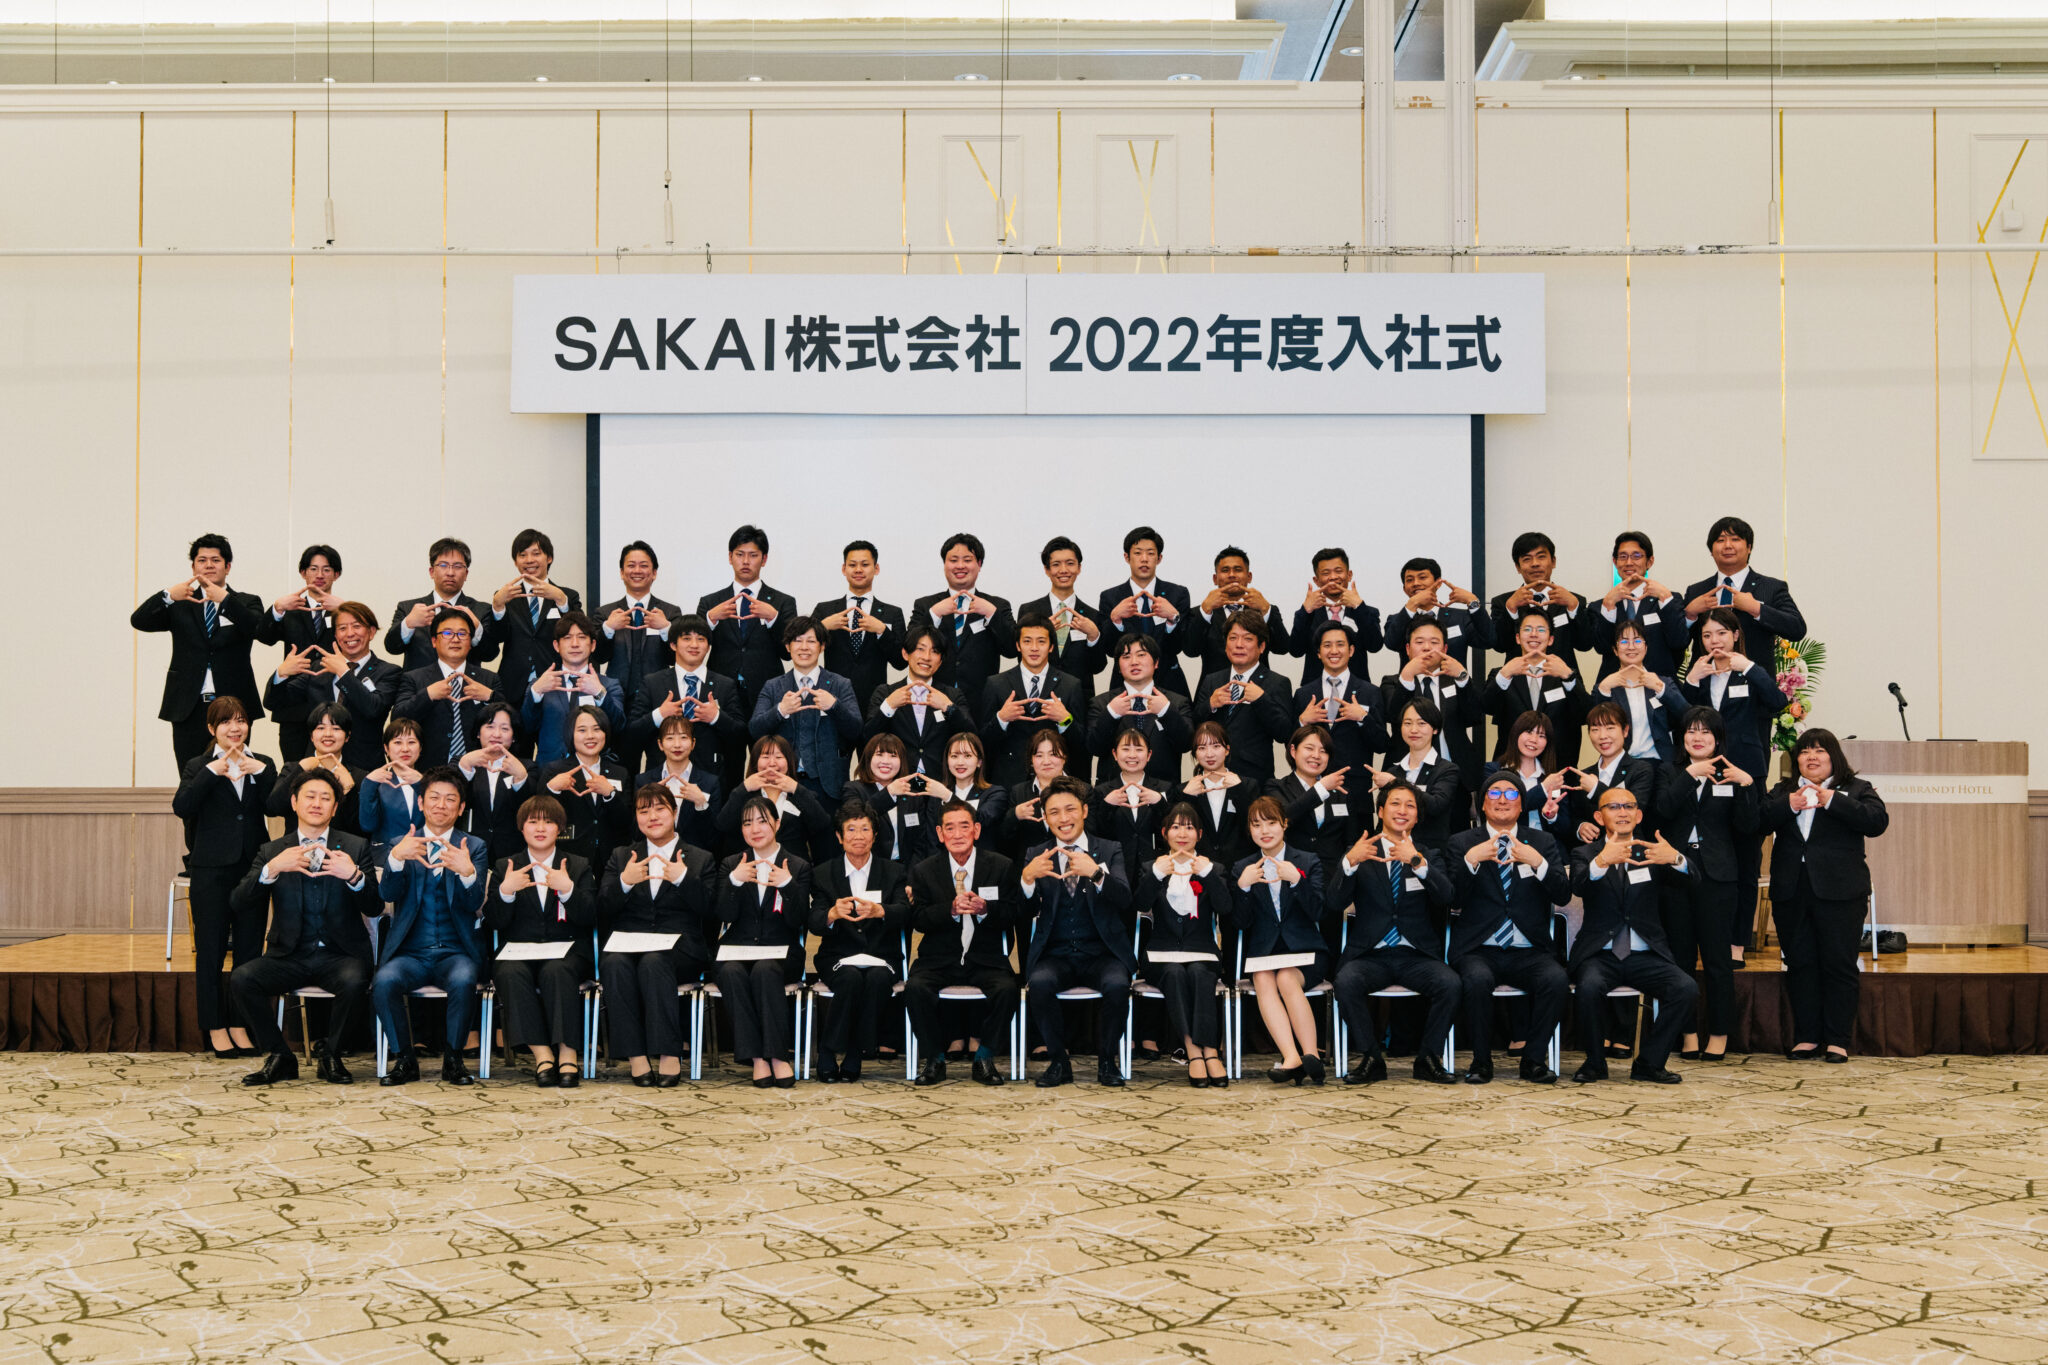 SAKAI株式会社 2022年入社式集合写真